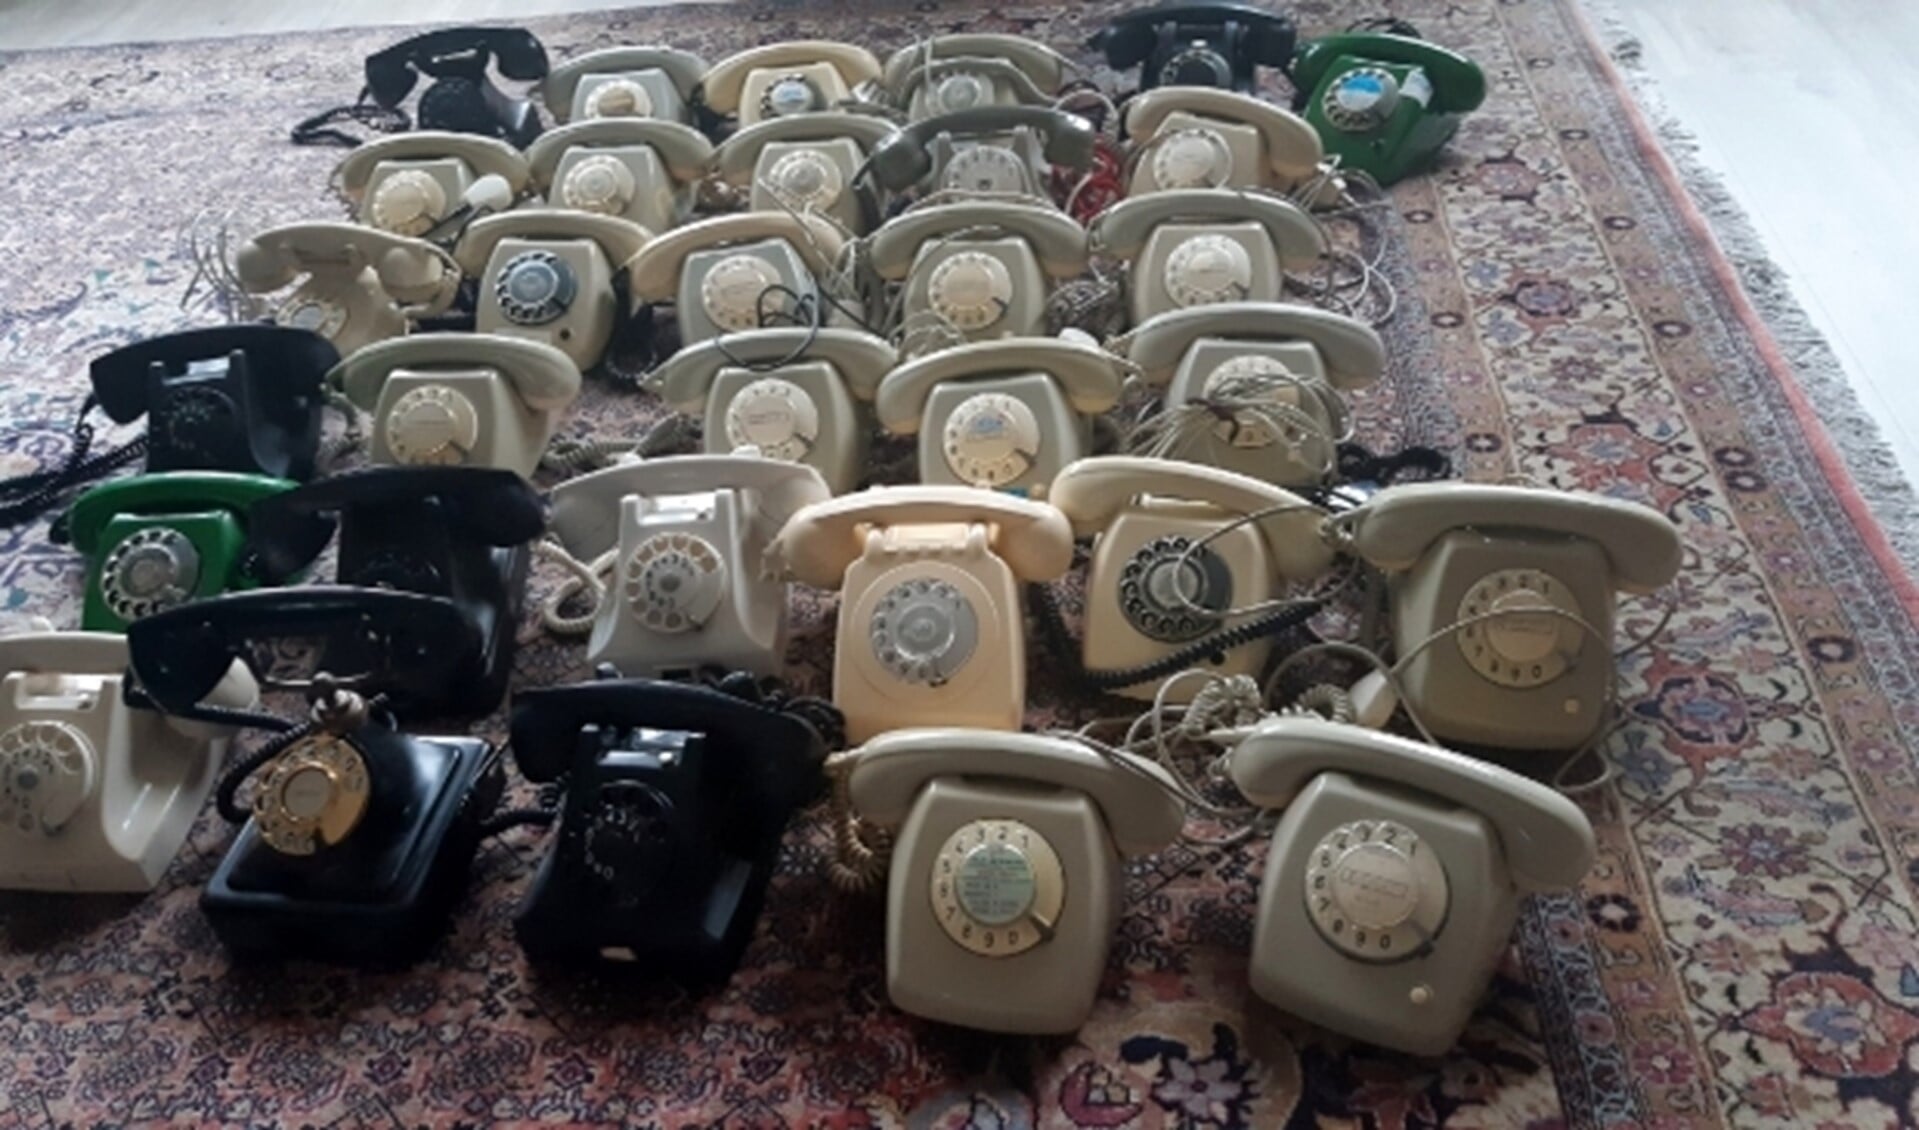 Deze telefoons met draaischijf wachten  op geld die ombouw tot Wonderfoon mogelijk maken. Help mee! Bel of doneer. Foto: Ineke van der Vet.